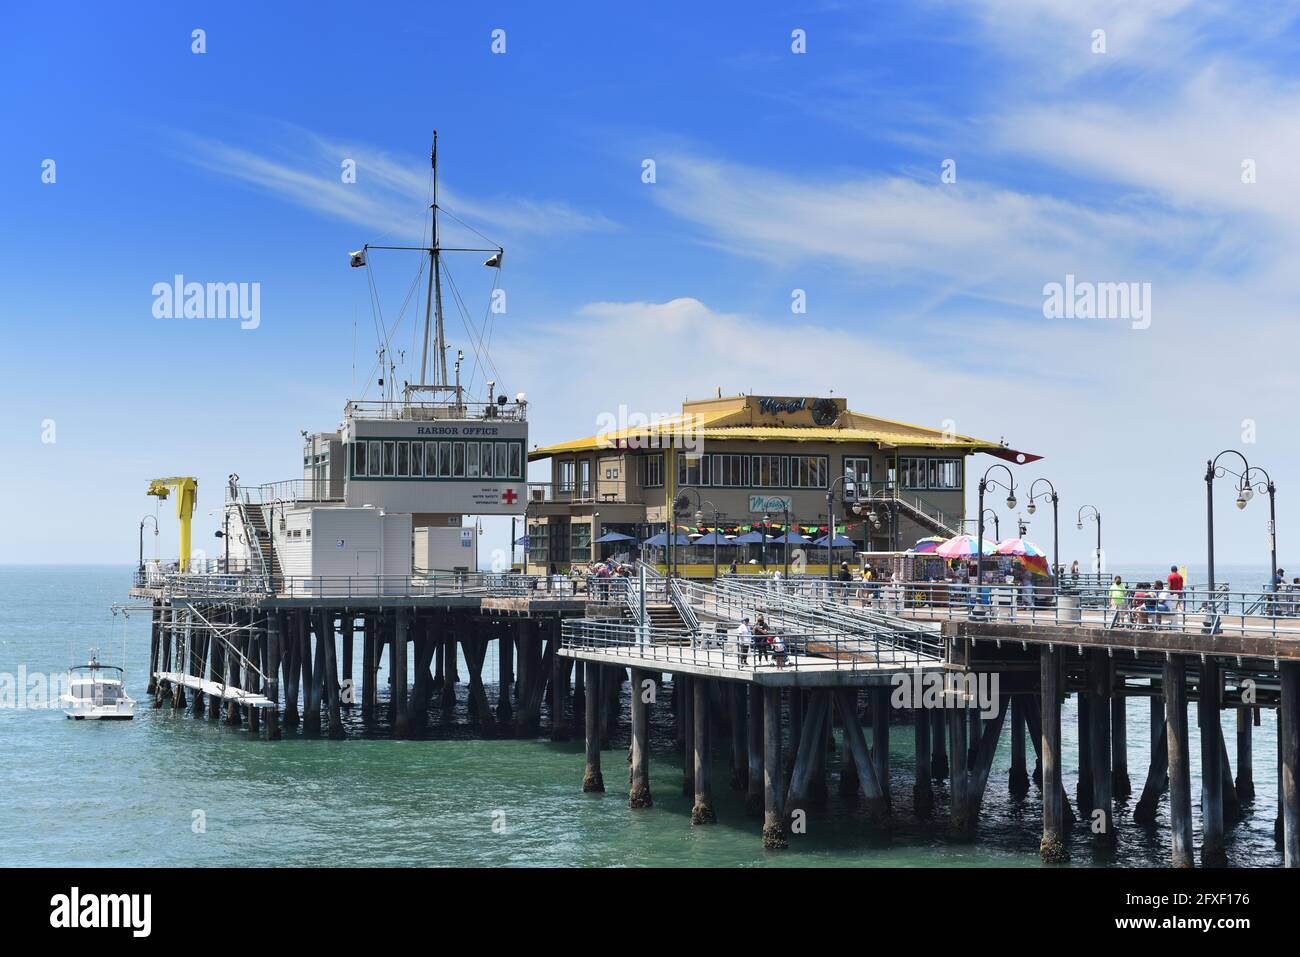 SANTA MONICA, KALIFORNIEN - 25. MAI 2021: Das Harbour Office Building und das mexikanische Restaurant Mariasol am Santa Monica Pier. Stockfoto